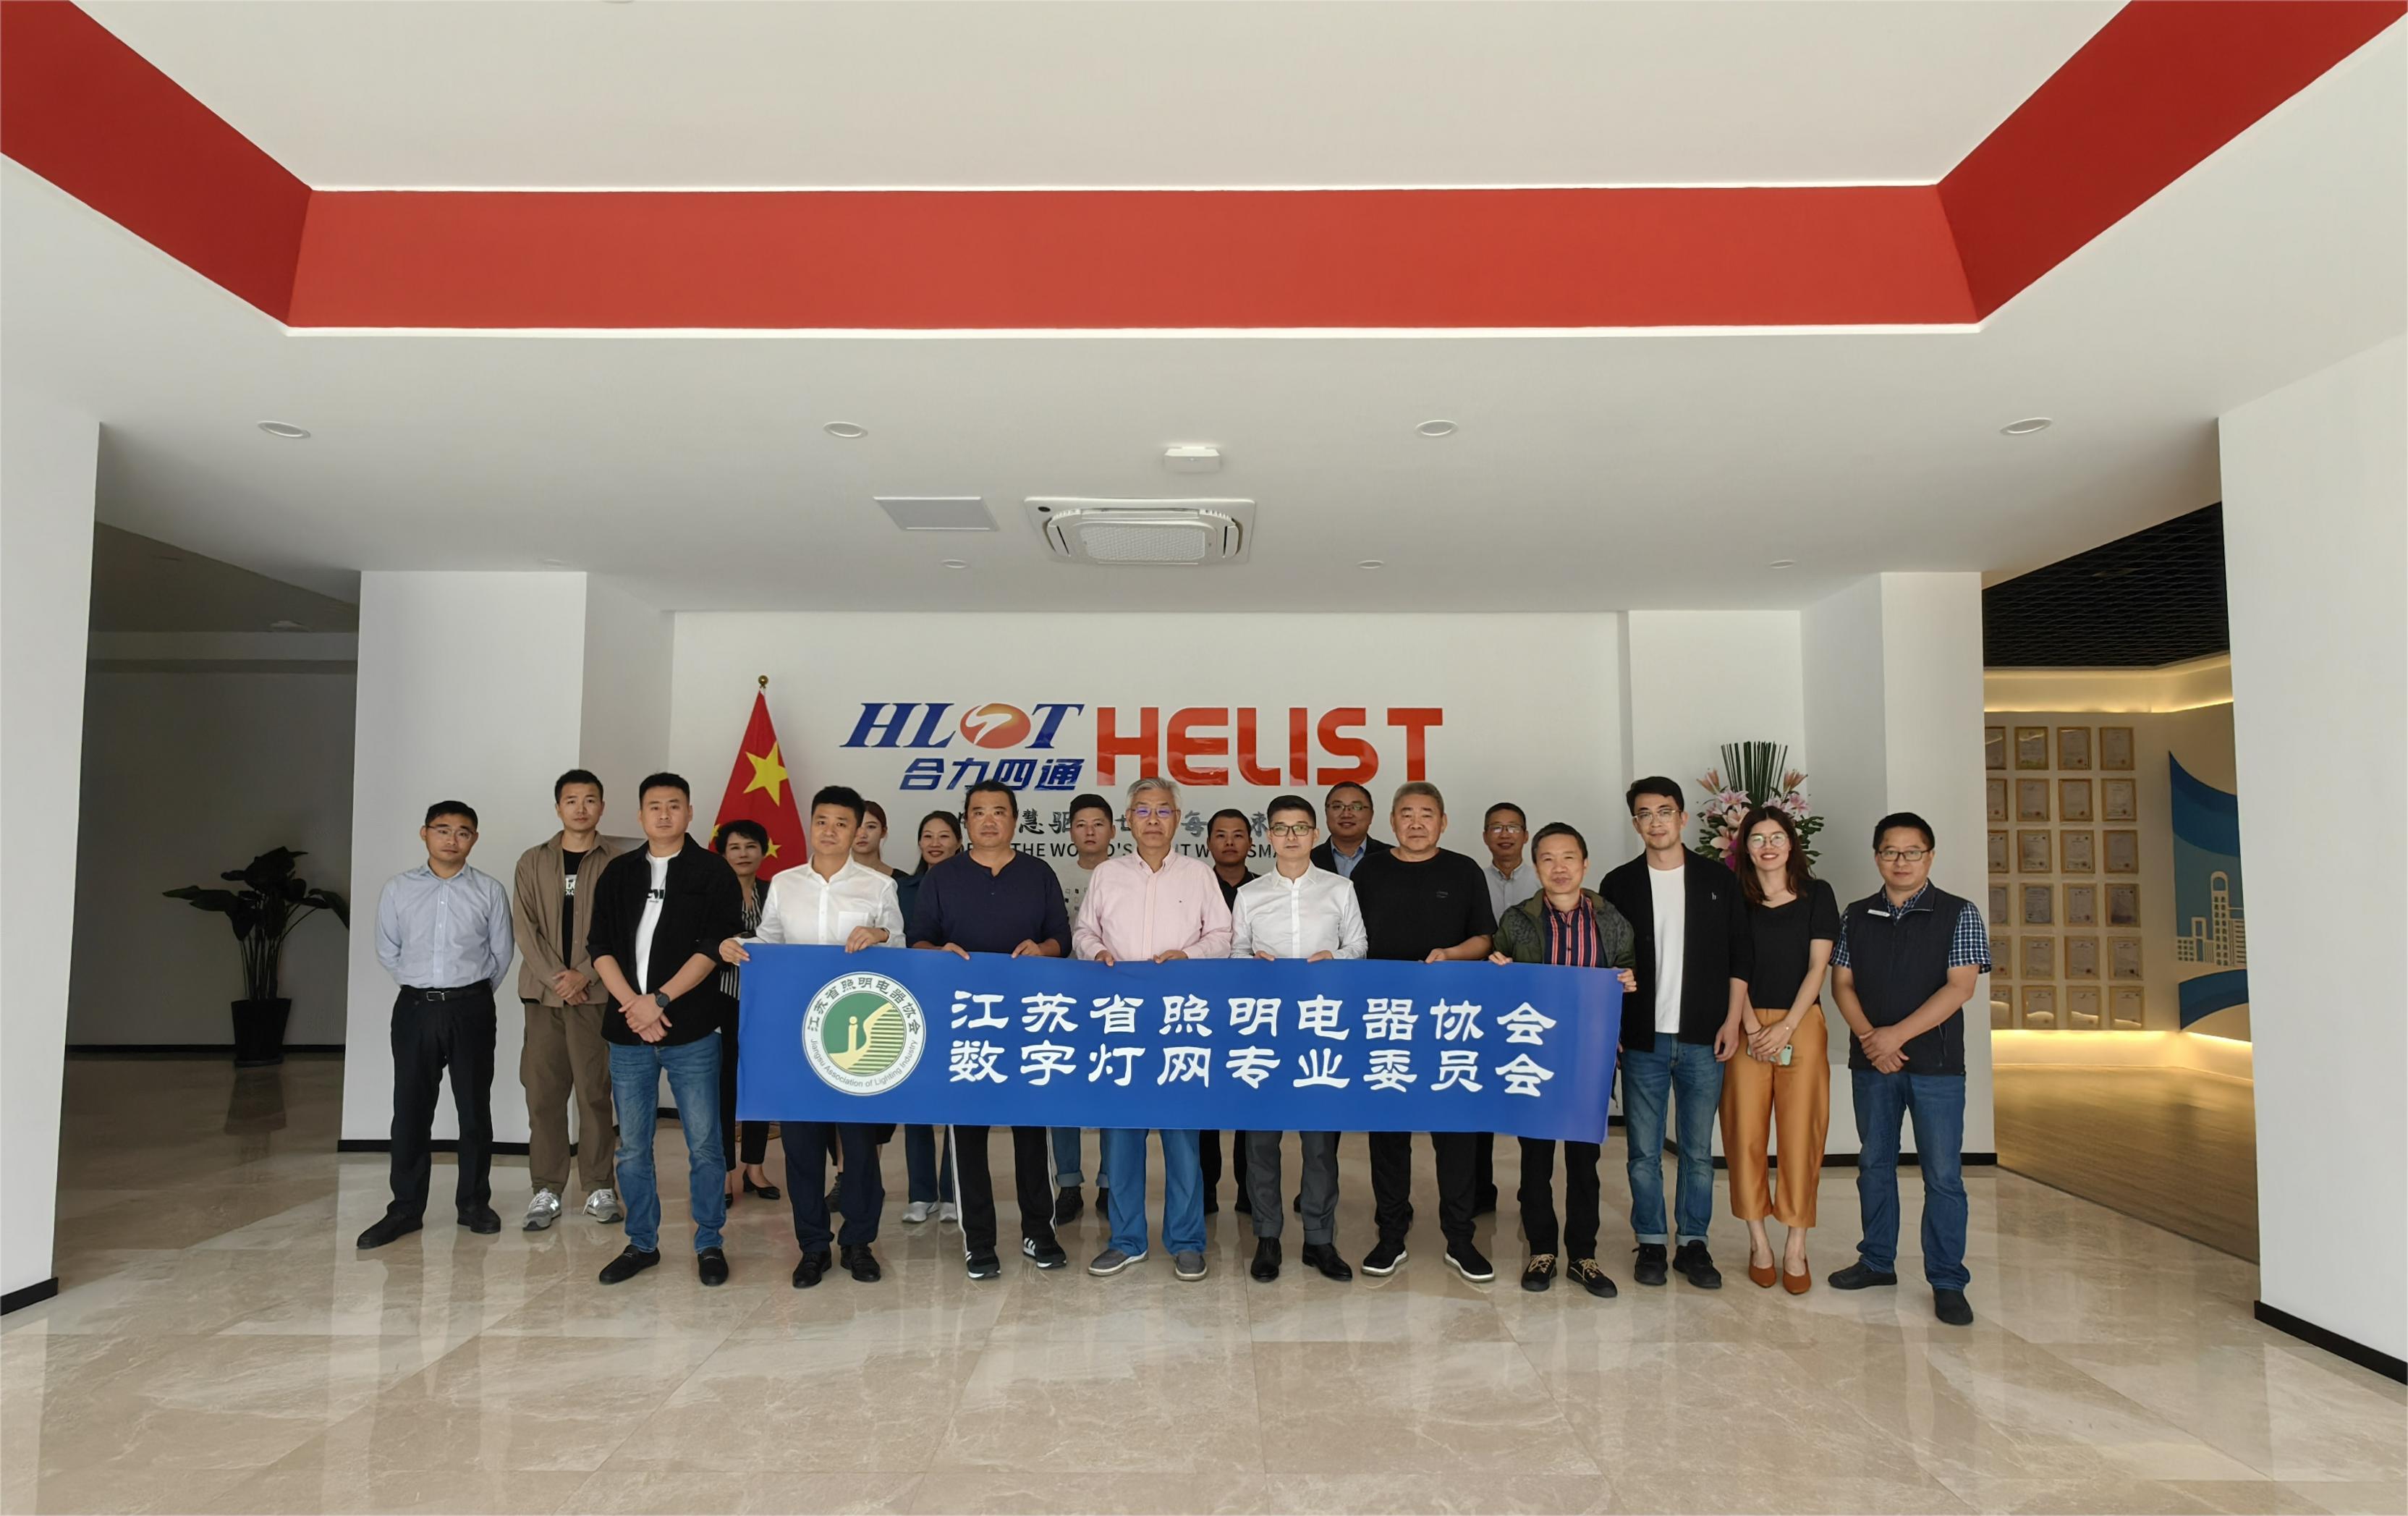 “数字灯网AI技术助推企业品牌出圈”沙龙活动在镇江举办